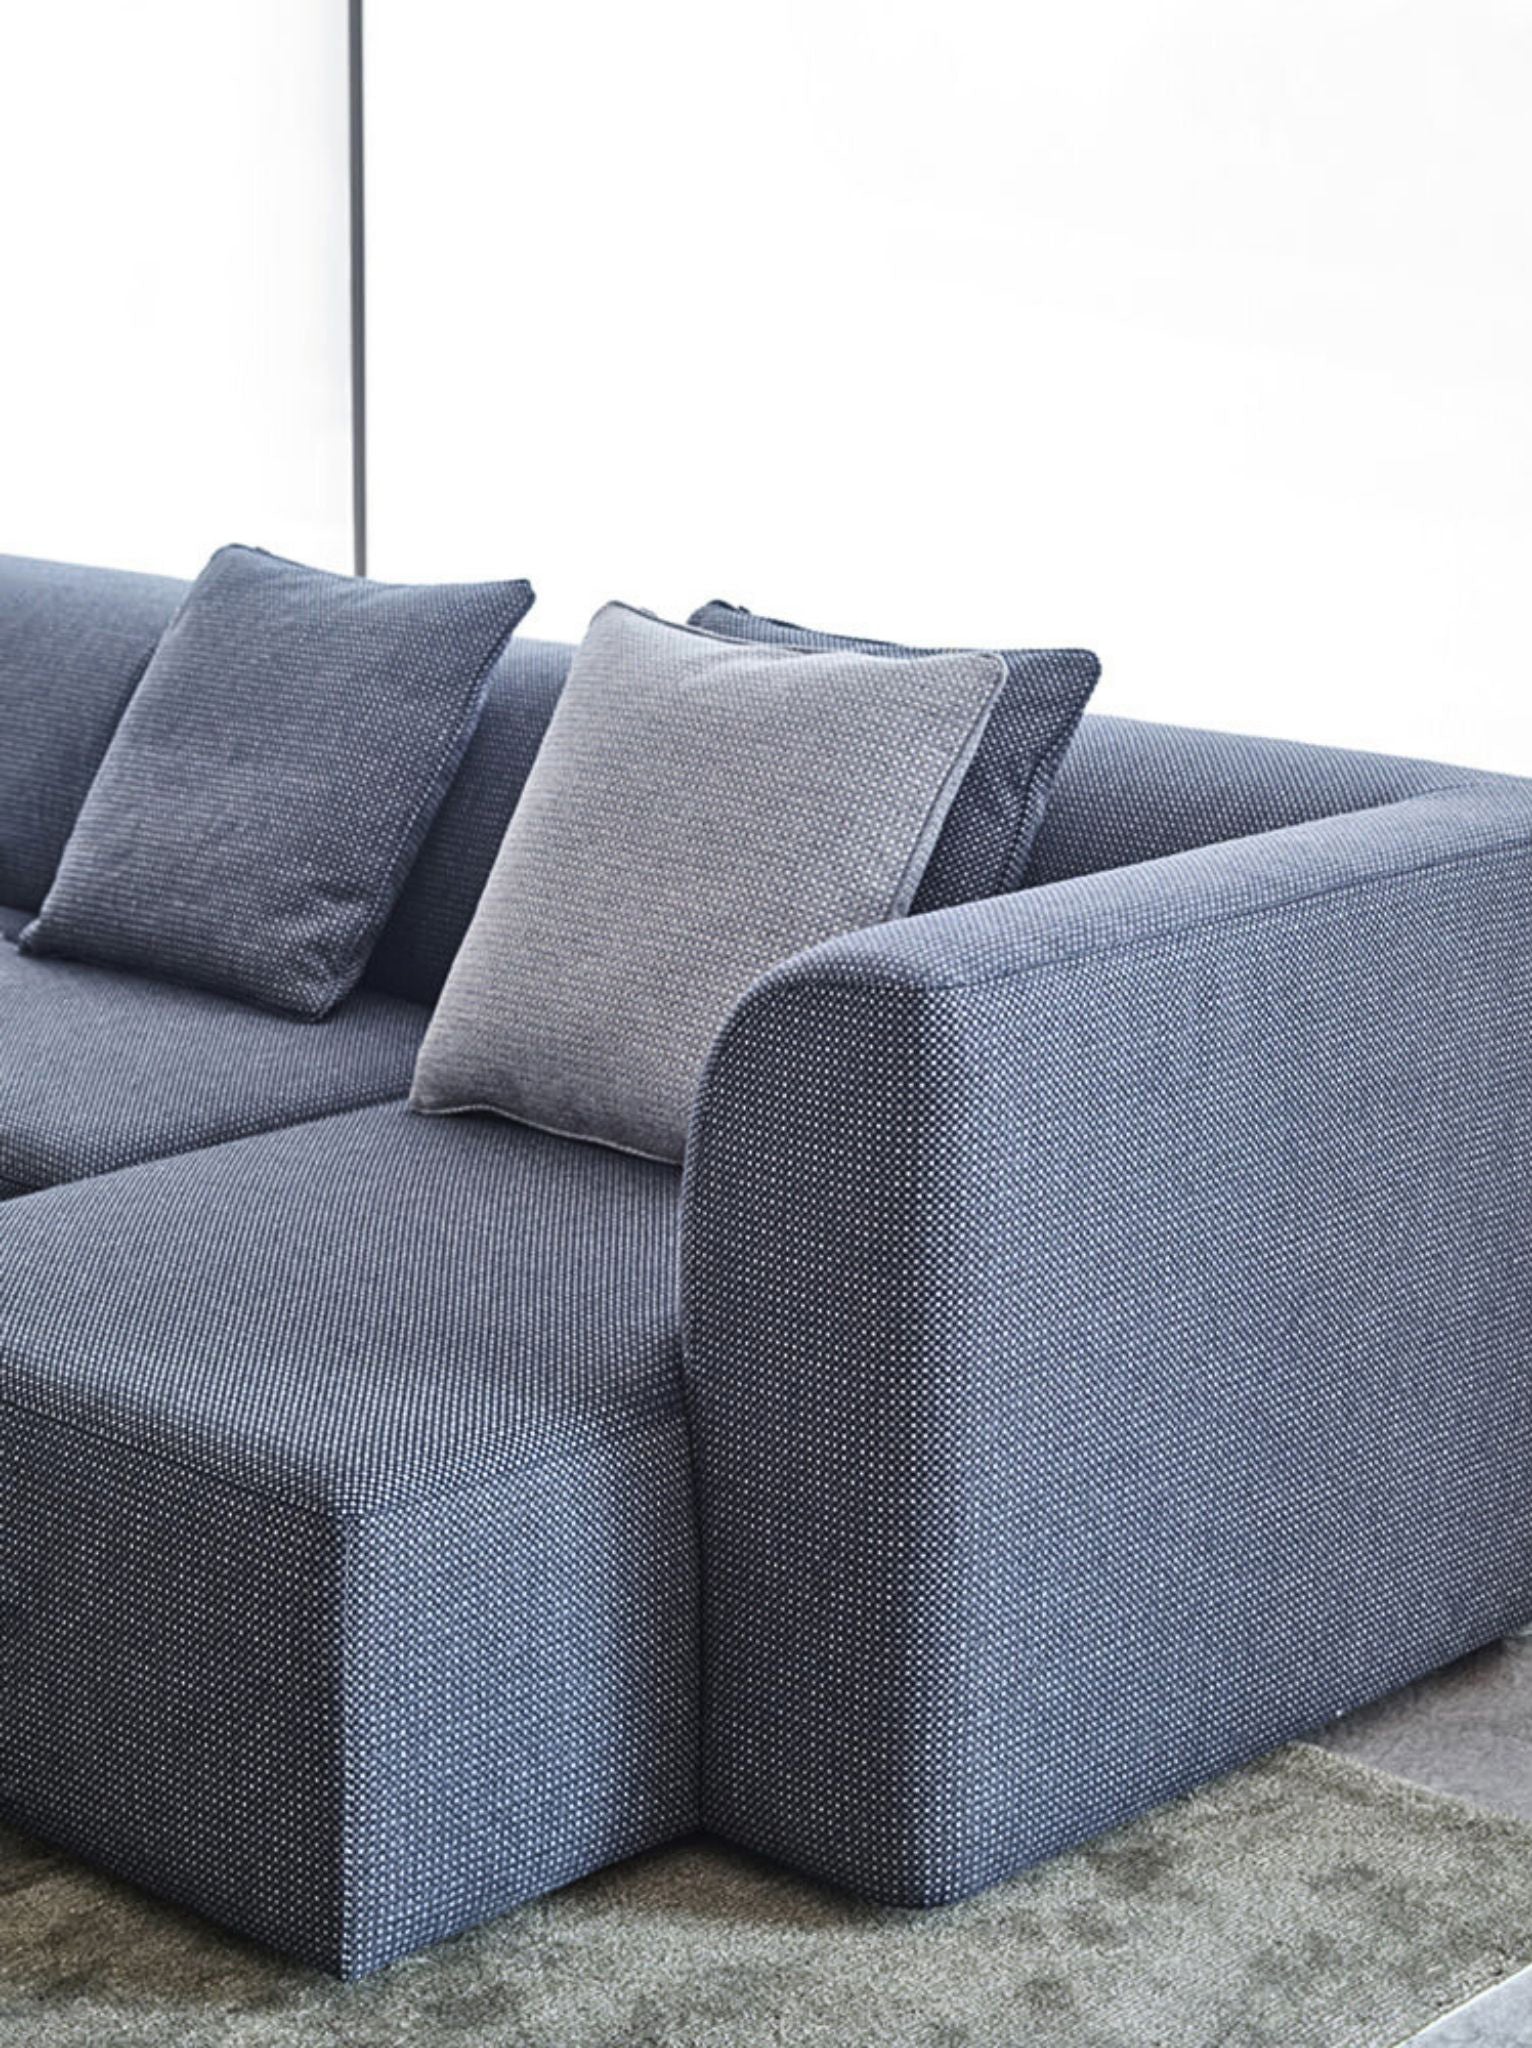 Slab Modular Sofa - The Feelter